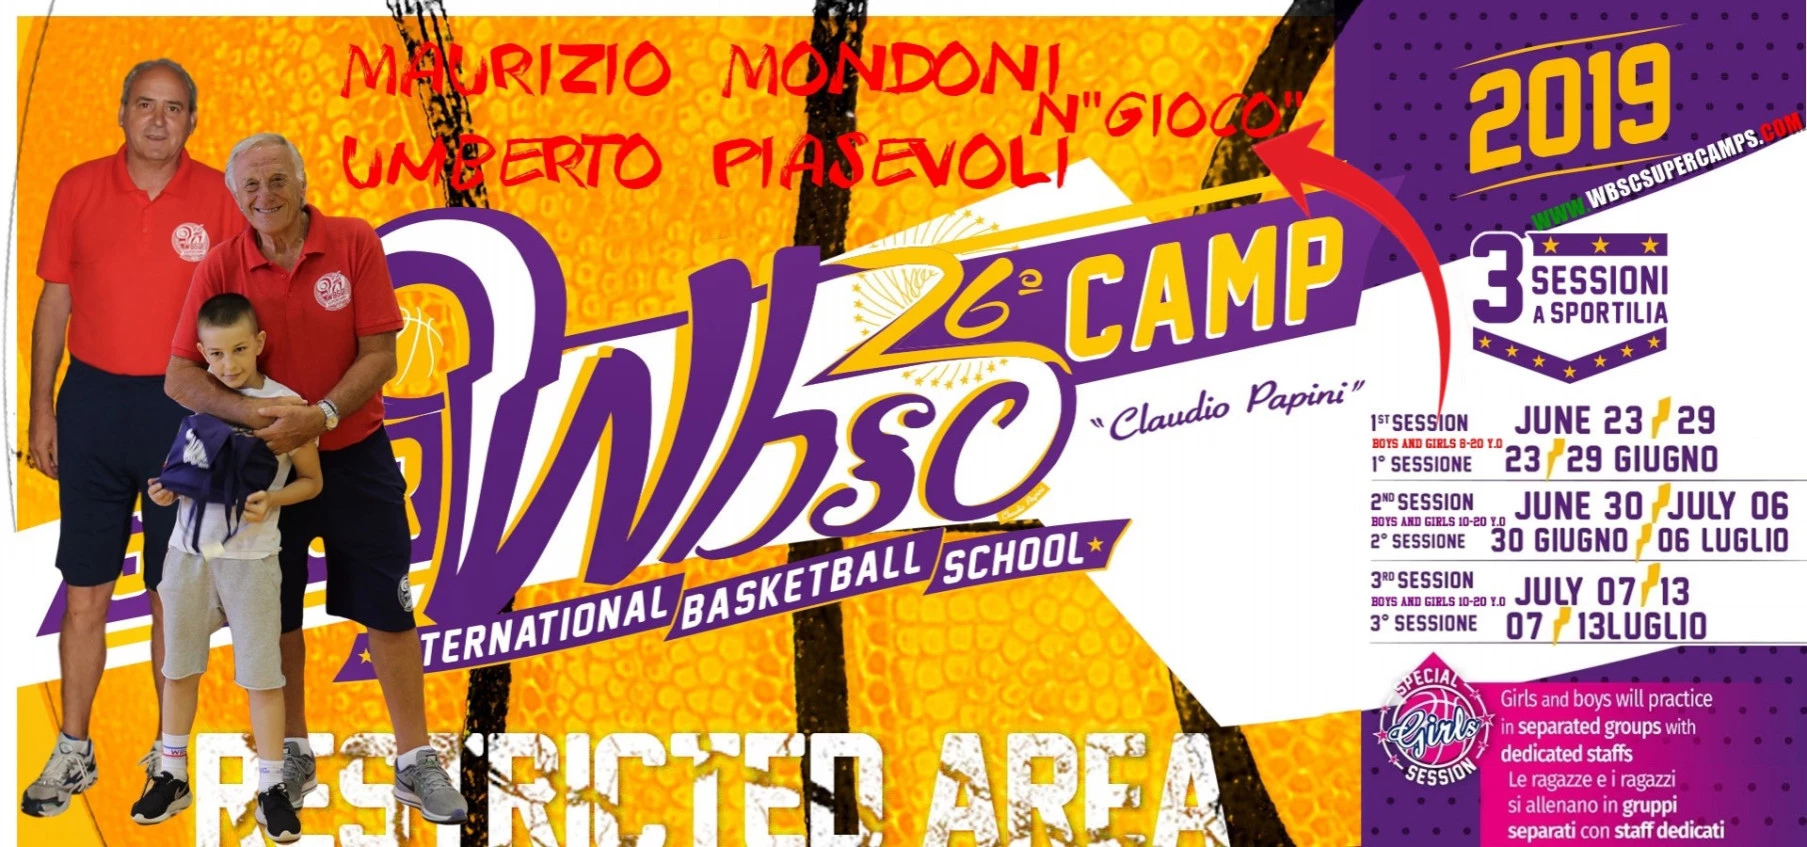 1° sessione del 26° WBSC Supercamp Italia 2019 gruppo Nit dagli 8 ai 11 anni!!